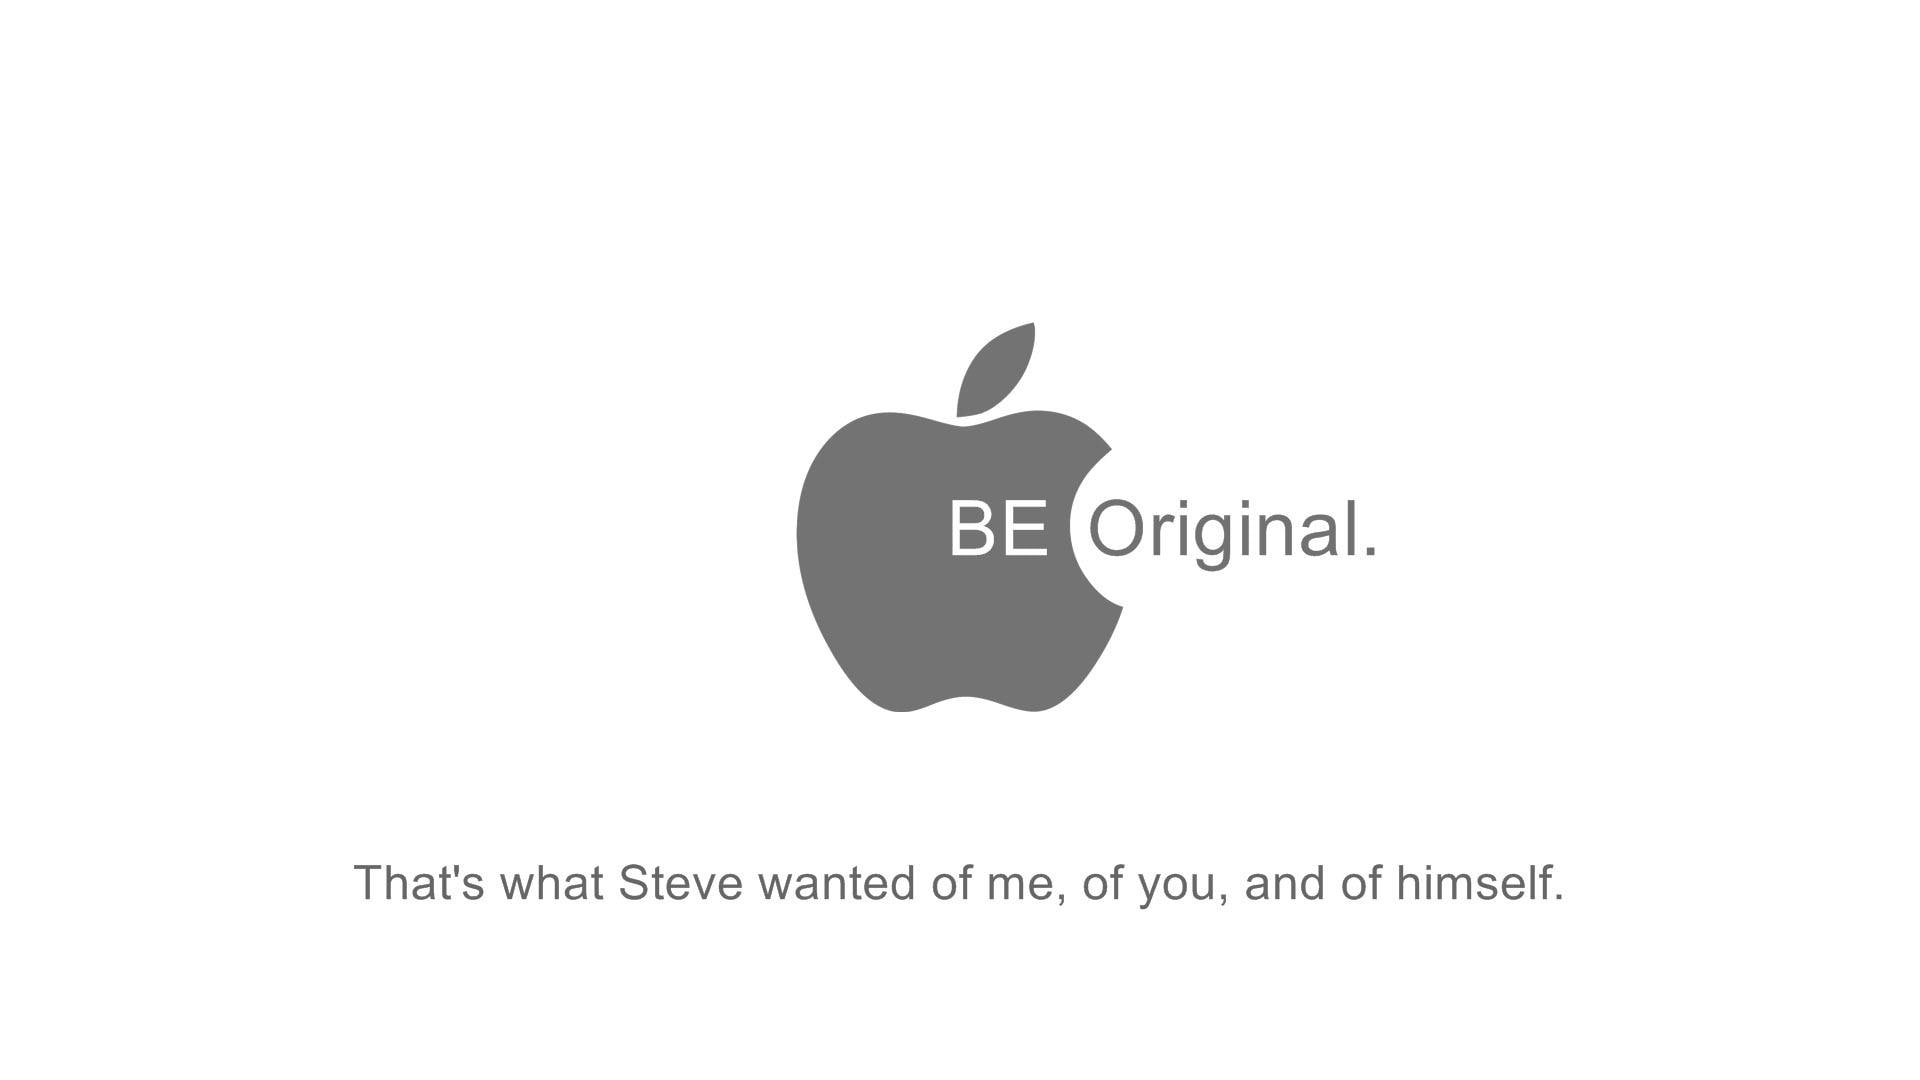 Apple quote, apple brand logo, quotes, 1920x1080, steve jobbs